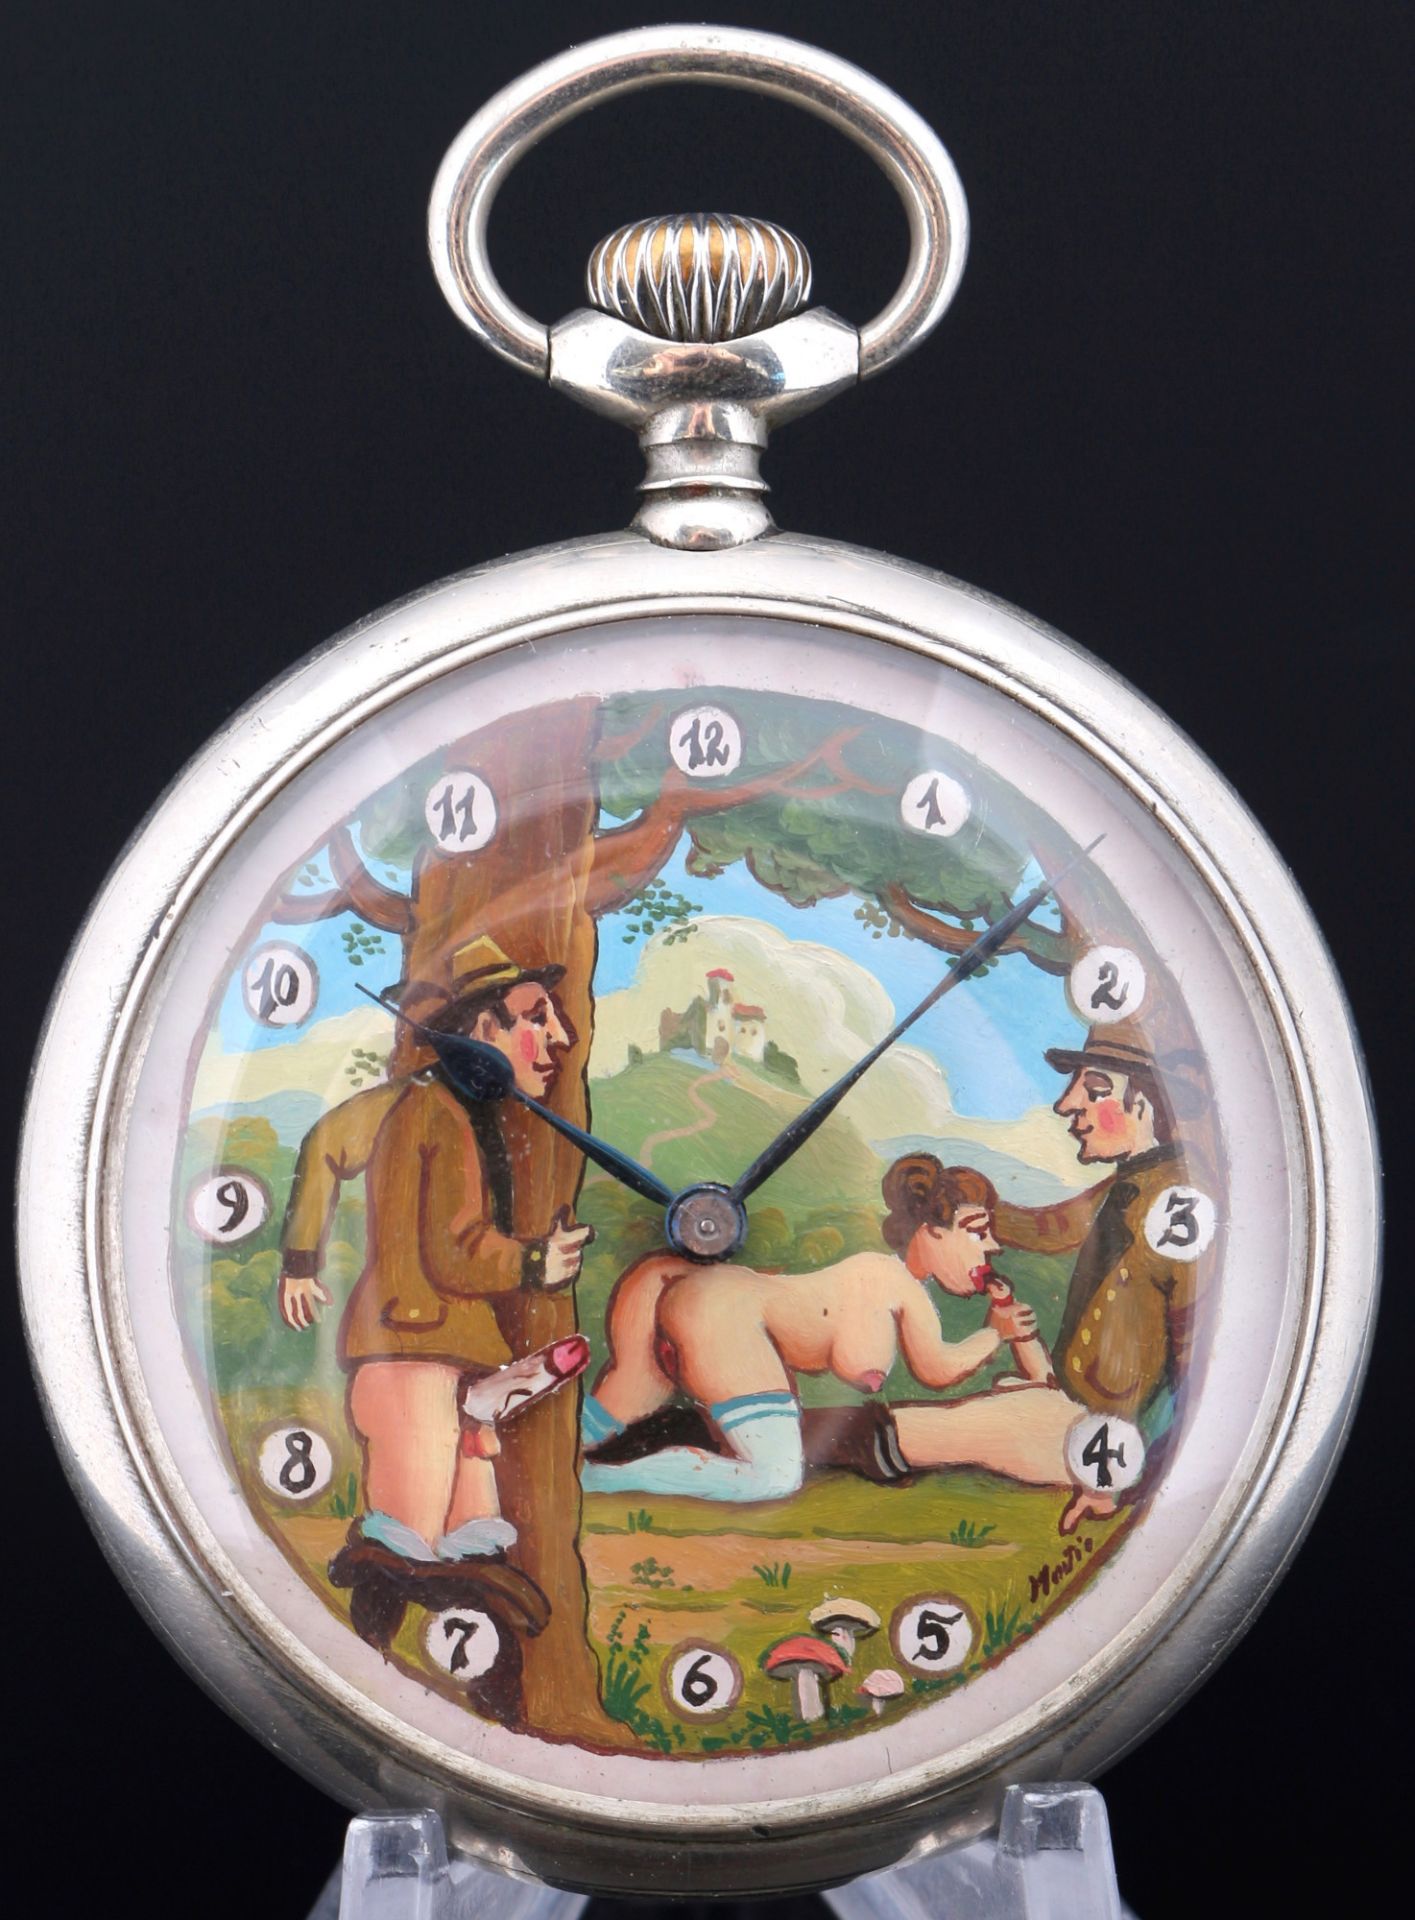 Doxa Taschenuhr mit erotischer Szene zwei Jäger und eine Frau,